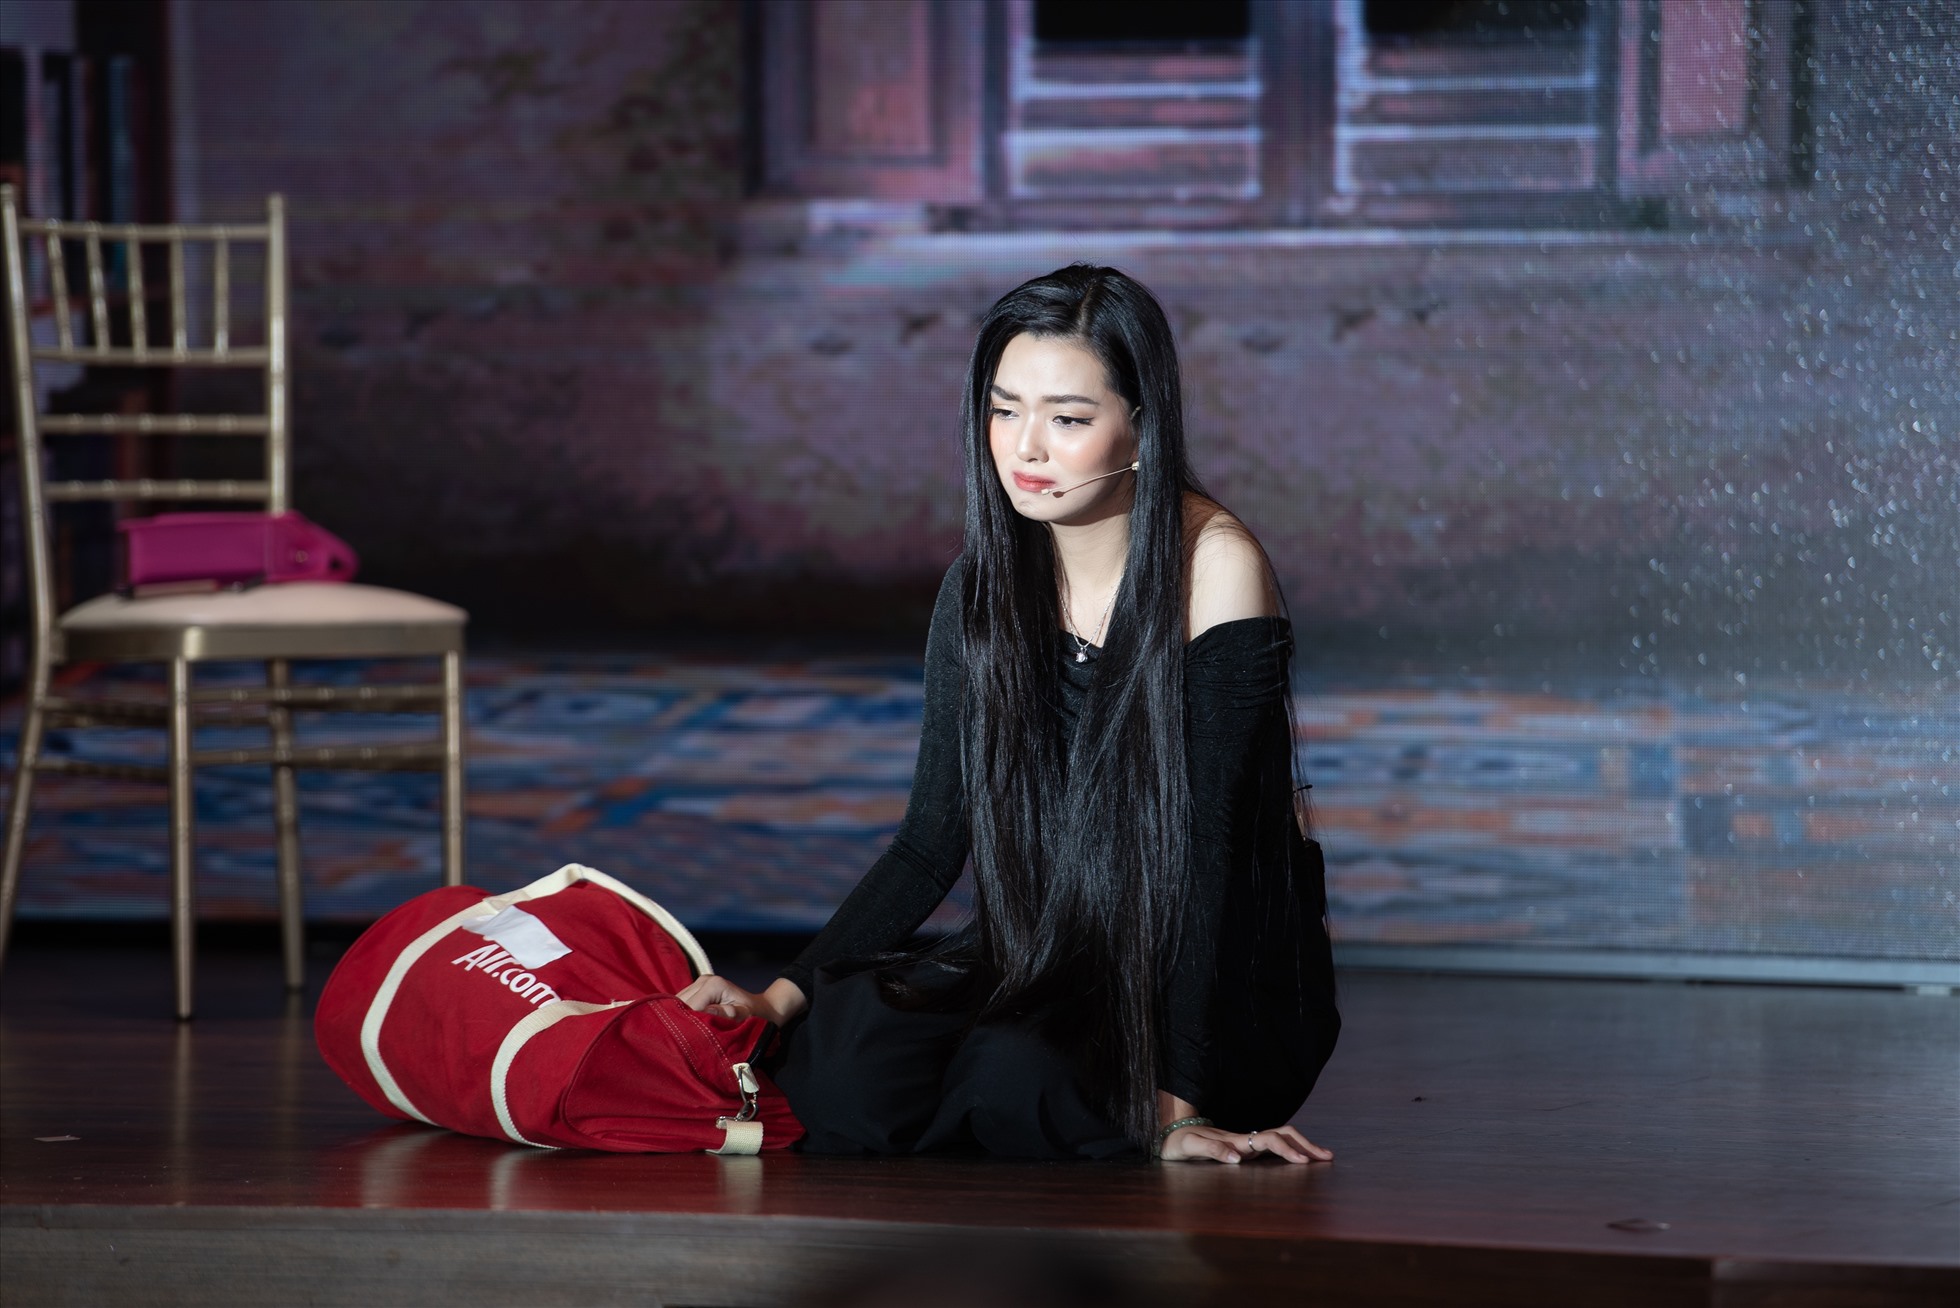 Xuất thân từ Đại học sân khấu điện ảnh thí sinh Mai Trang Thảo diễn vở kịch tâm lý tình cảm mẫu tử và lấy nhiều nước mắt của người xem.